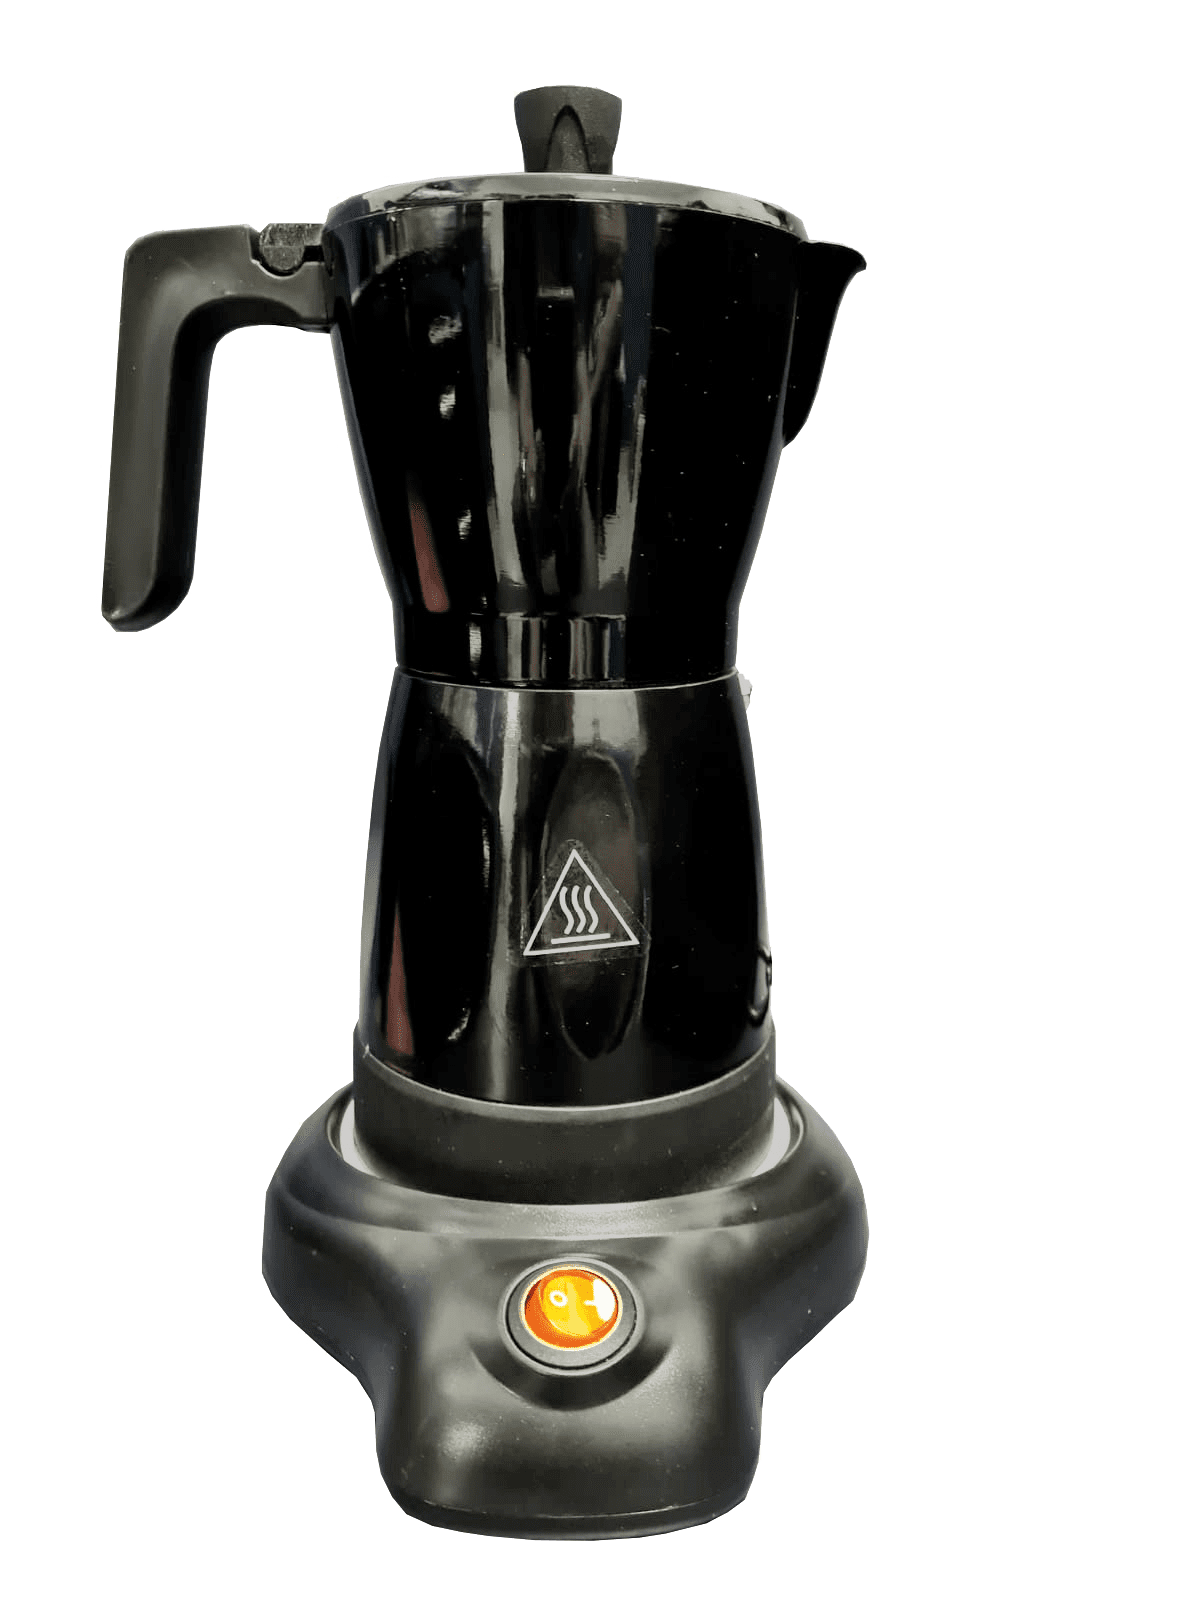 Cafetera eléctrica de 6 tazas ROYAL – envios a cuba